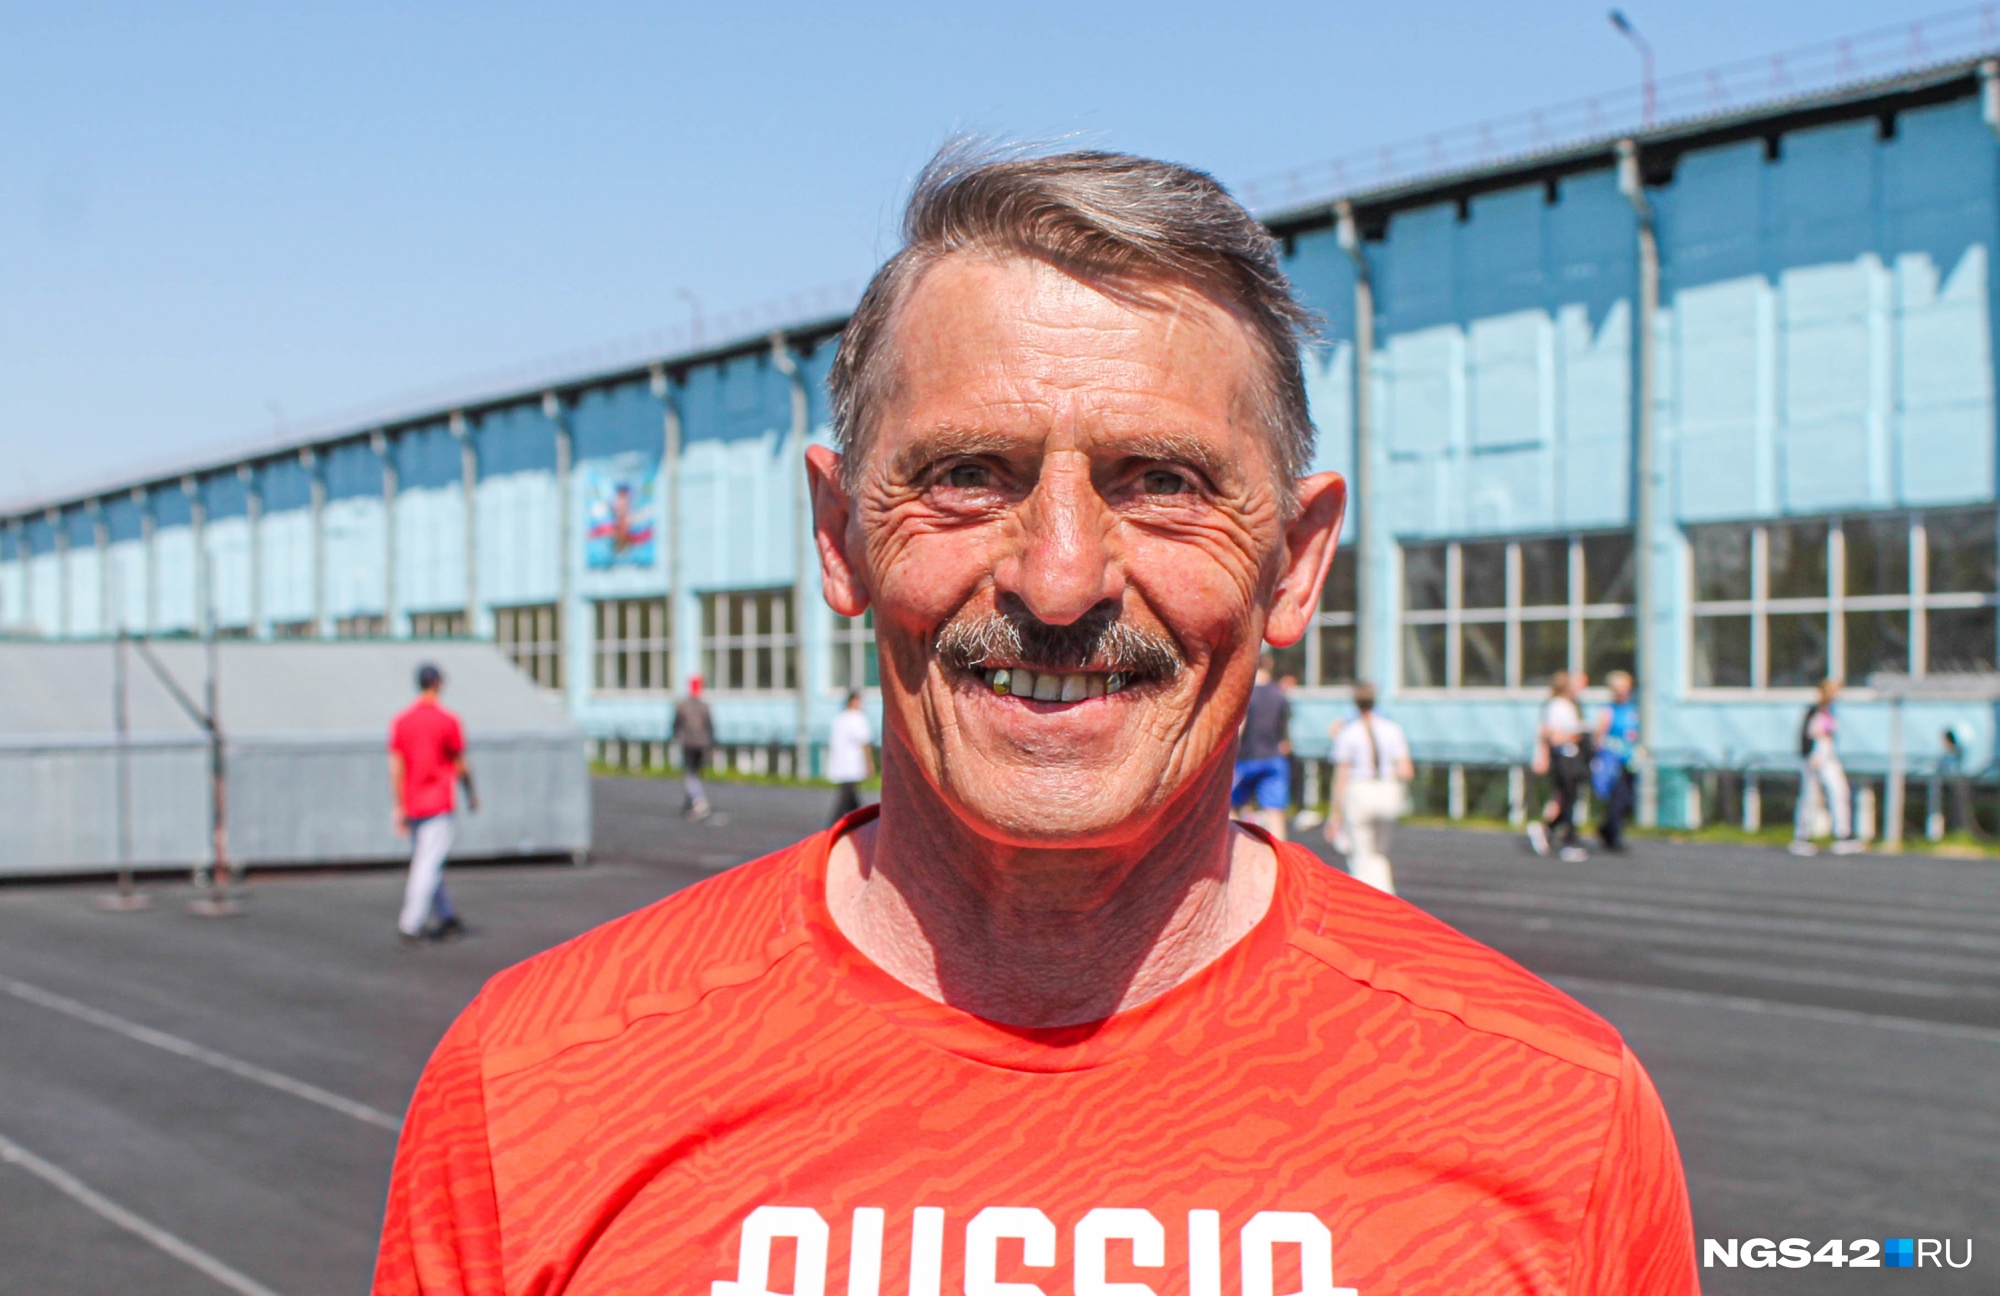 В свои 66 лет Клопов тренируют спасателей и судит их соревнования